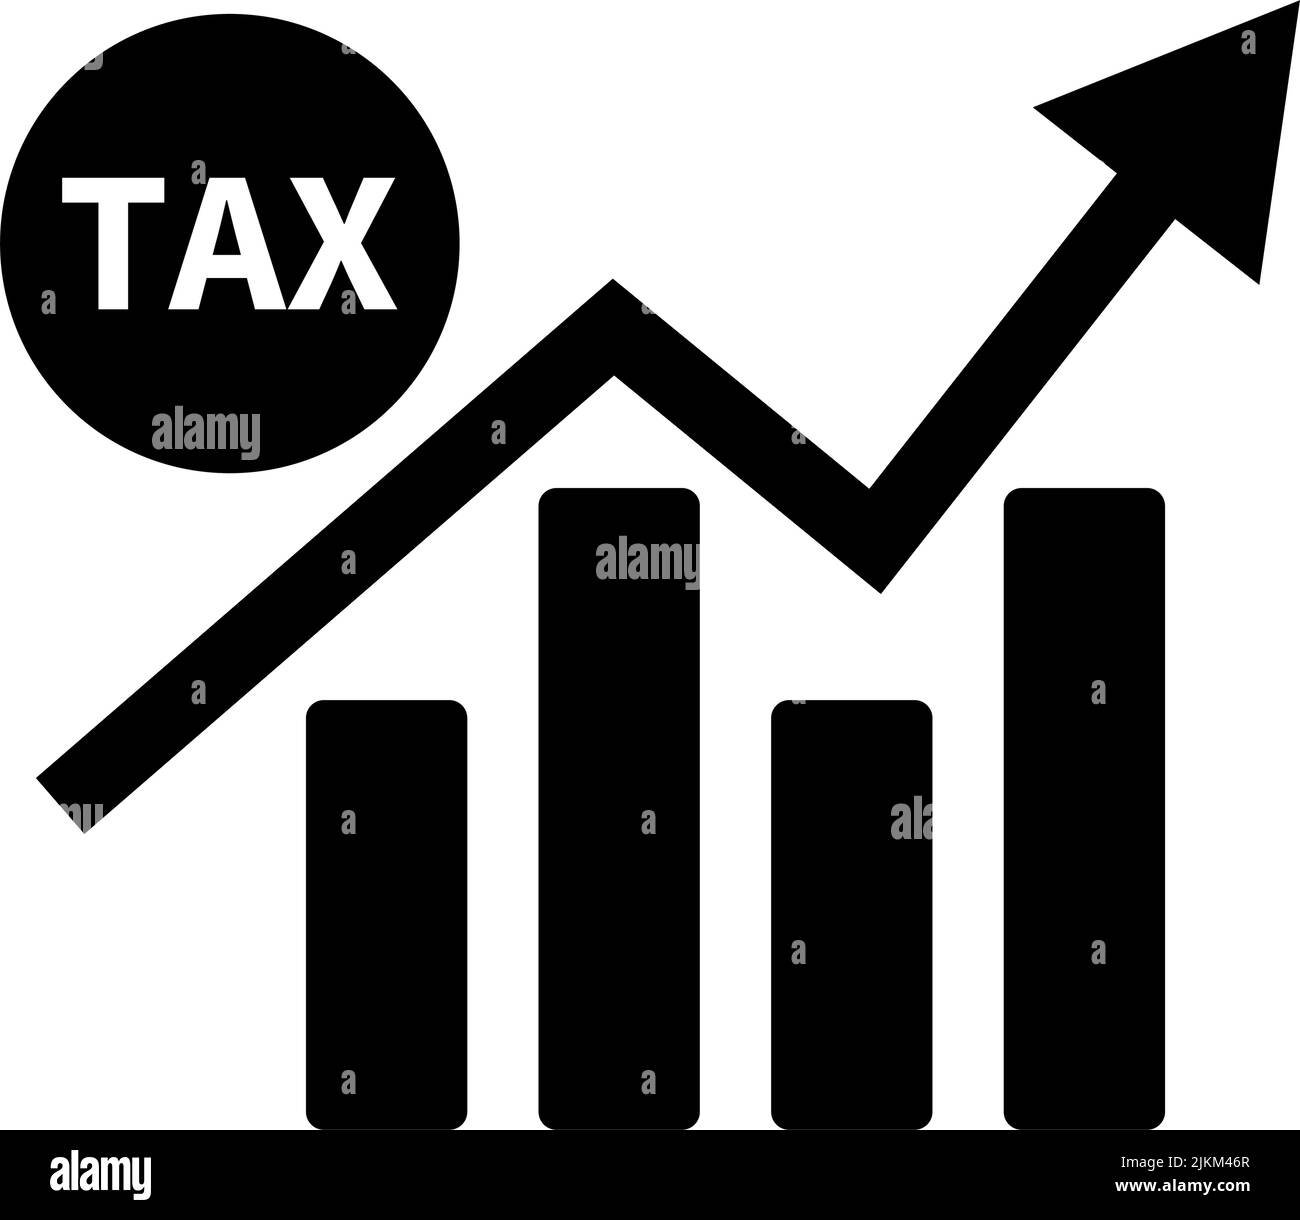 Bar graph icon of tax increase. Editable vector. Stock Vector